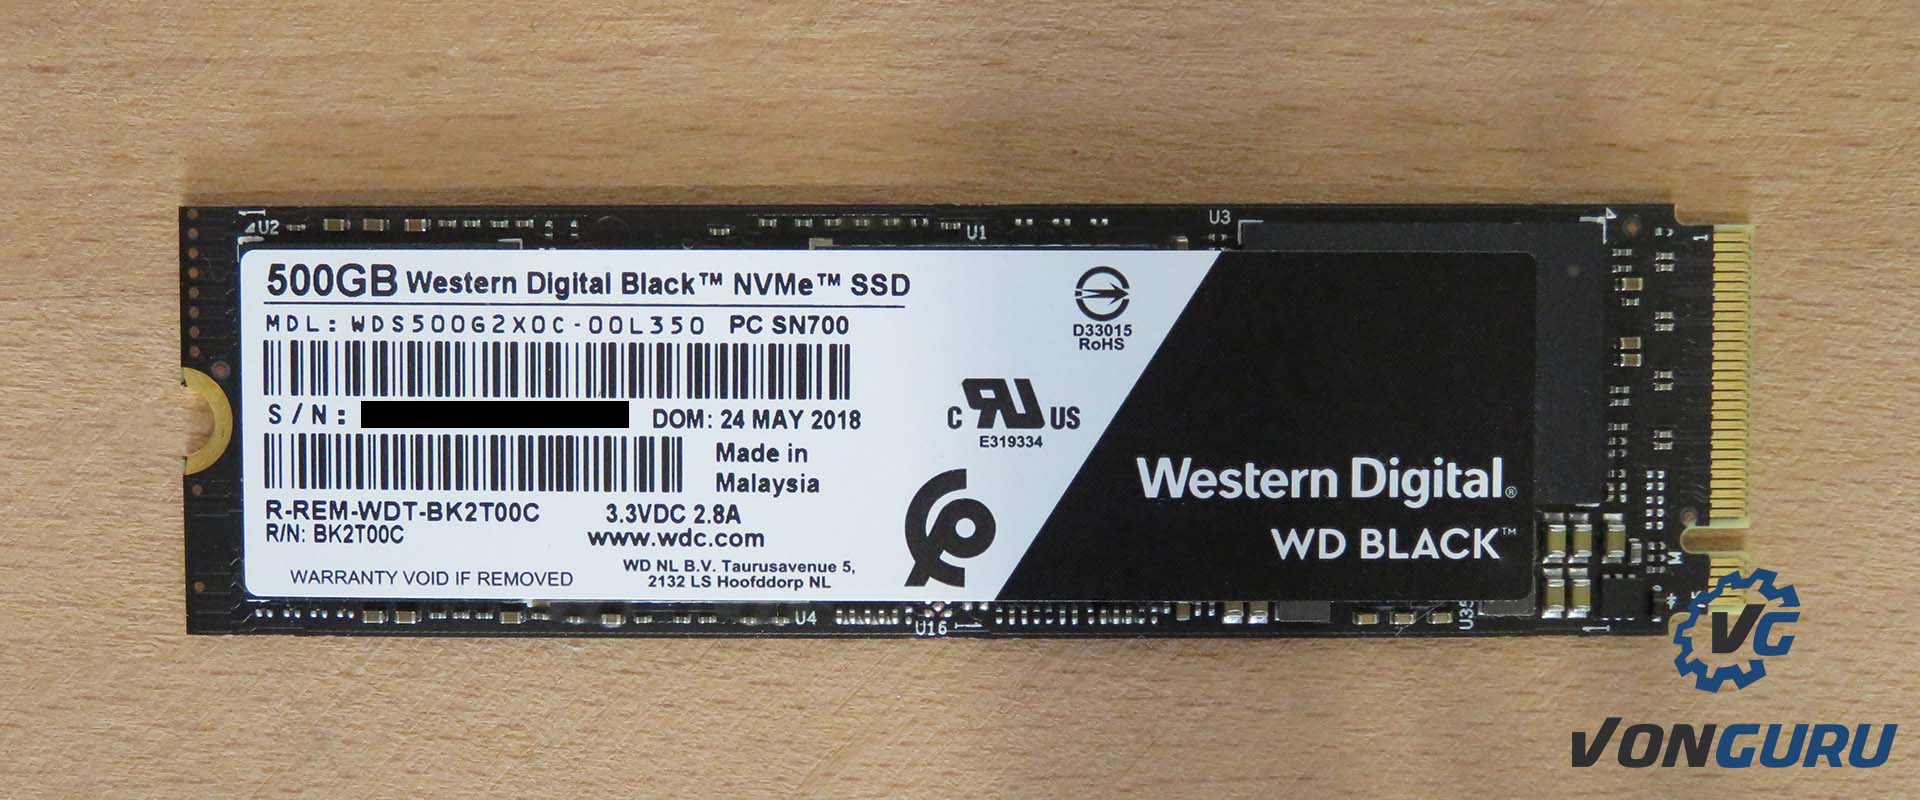 Western Digital Black NVme